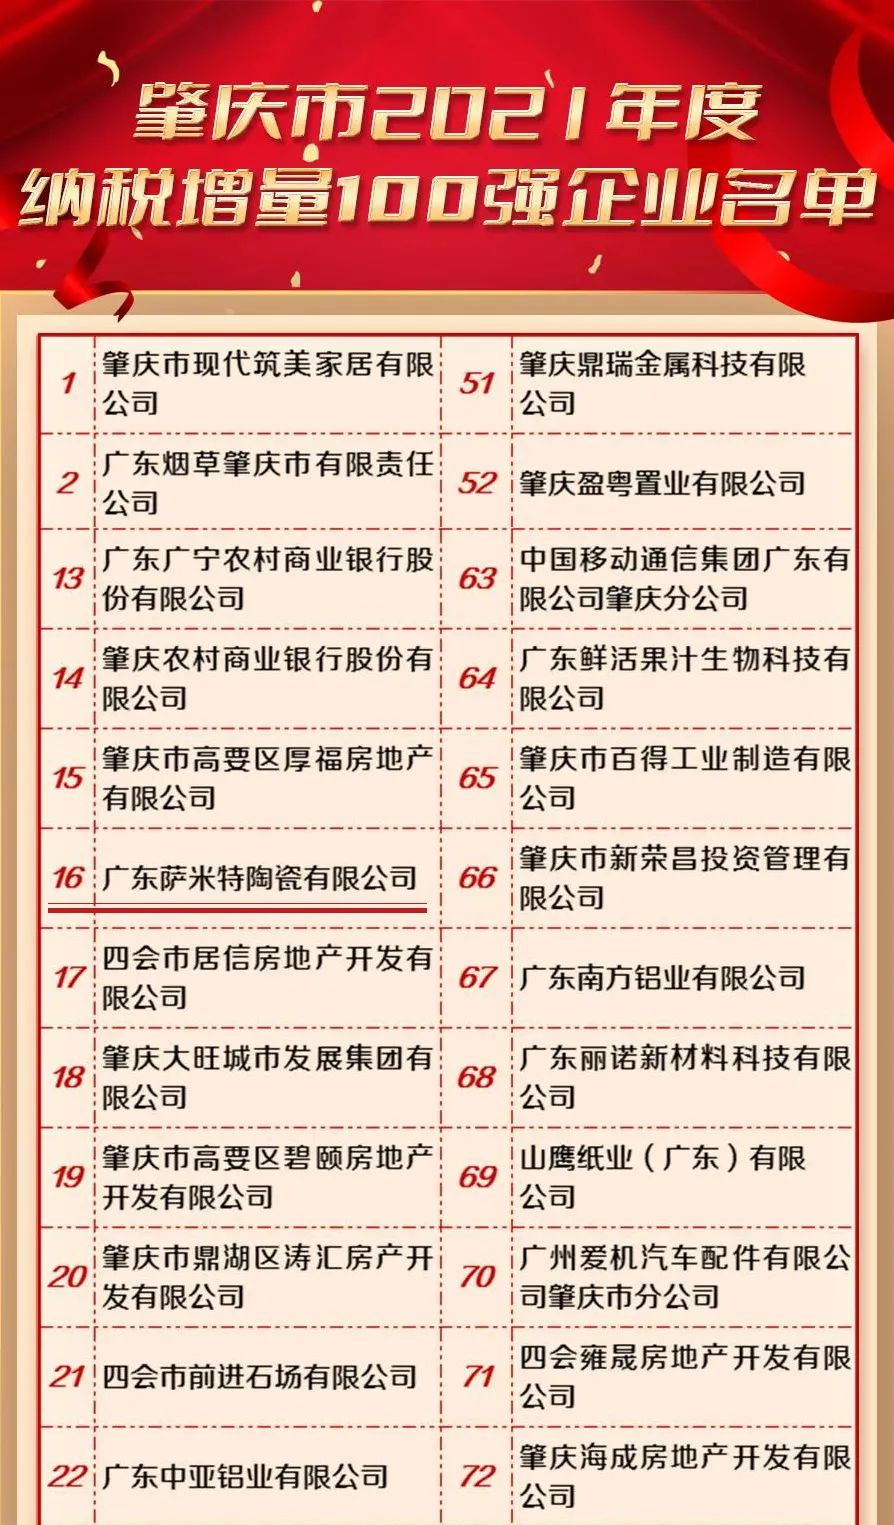  肇庆市2021年度纳税增量100强企业